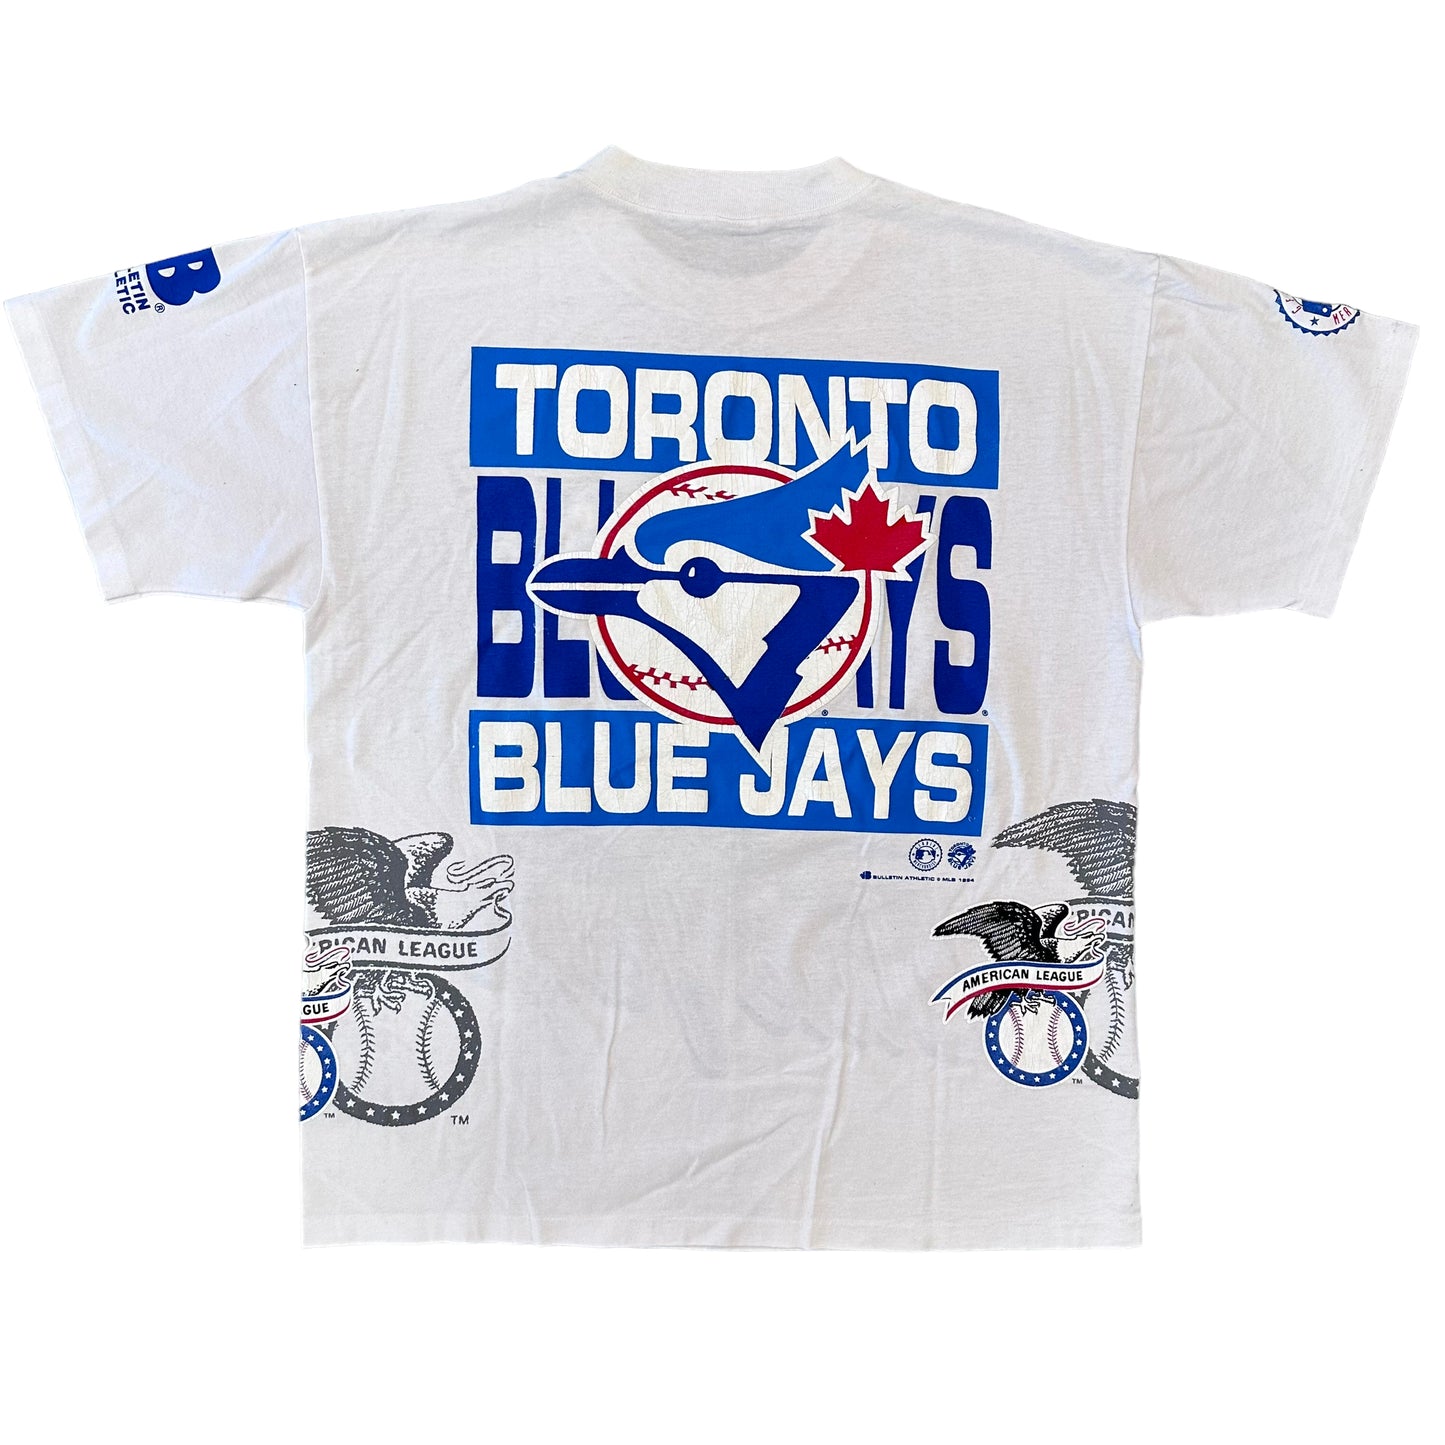 1992 Toronto Blue Jays Bulletin Athletic MLB Baseball AOP T-Shirt Sz XL